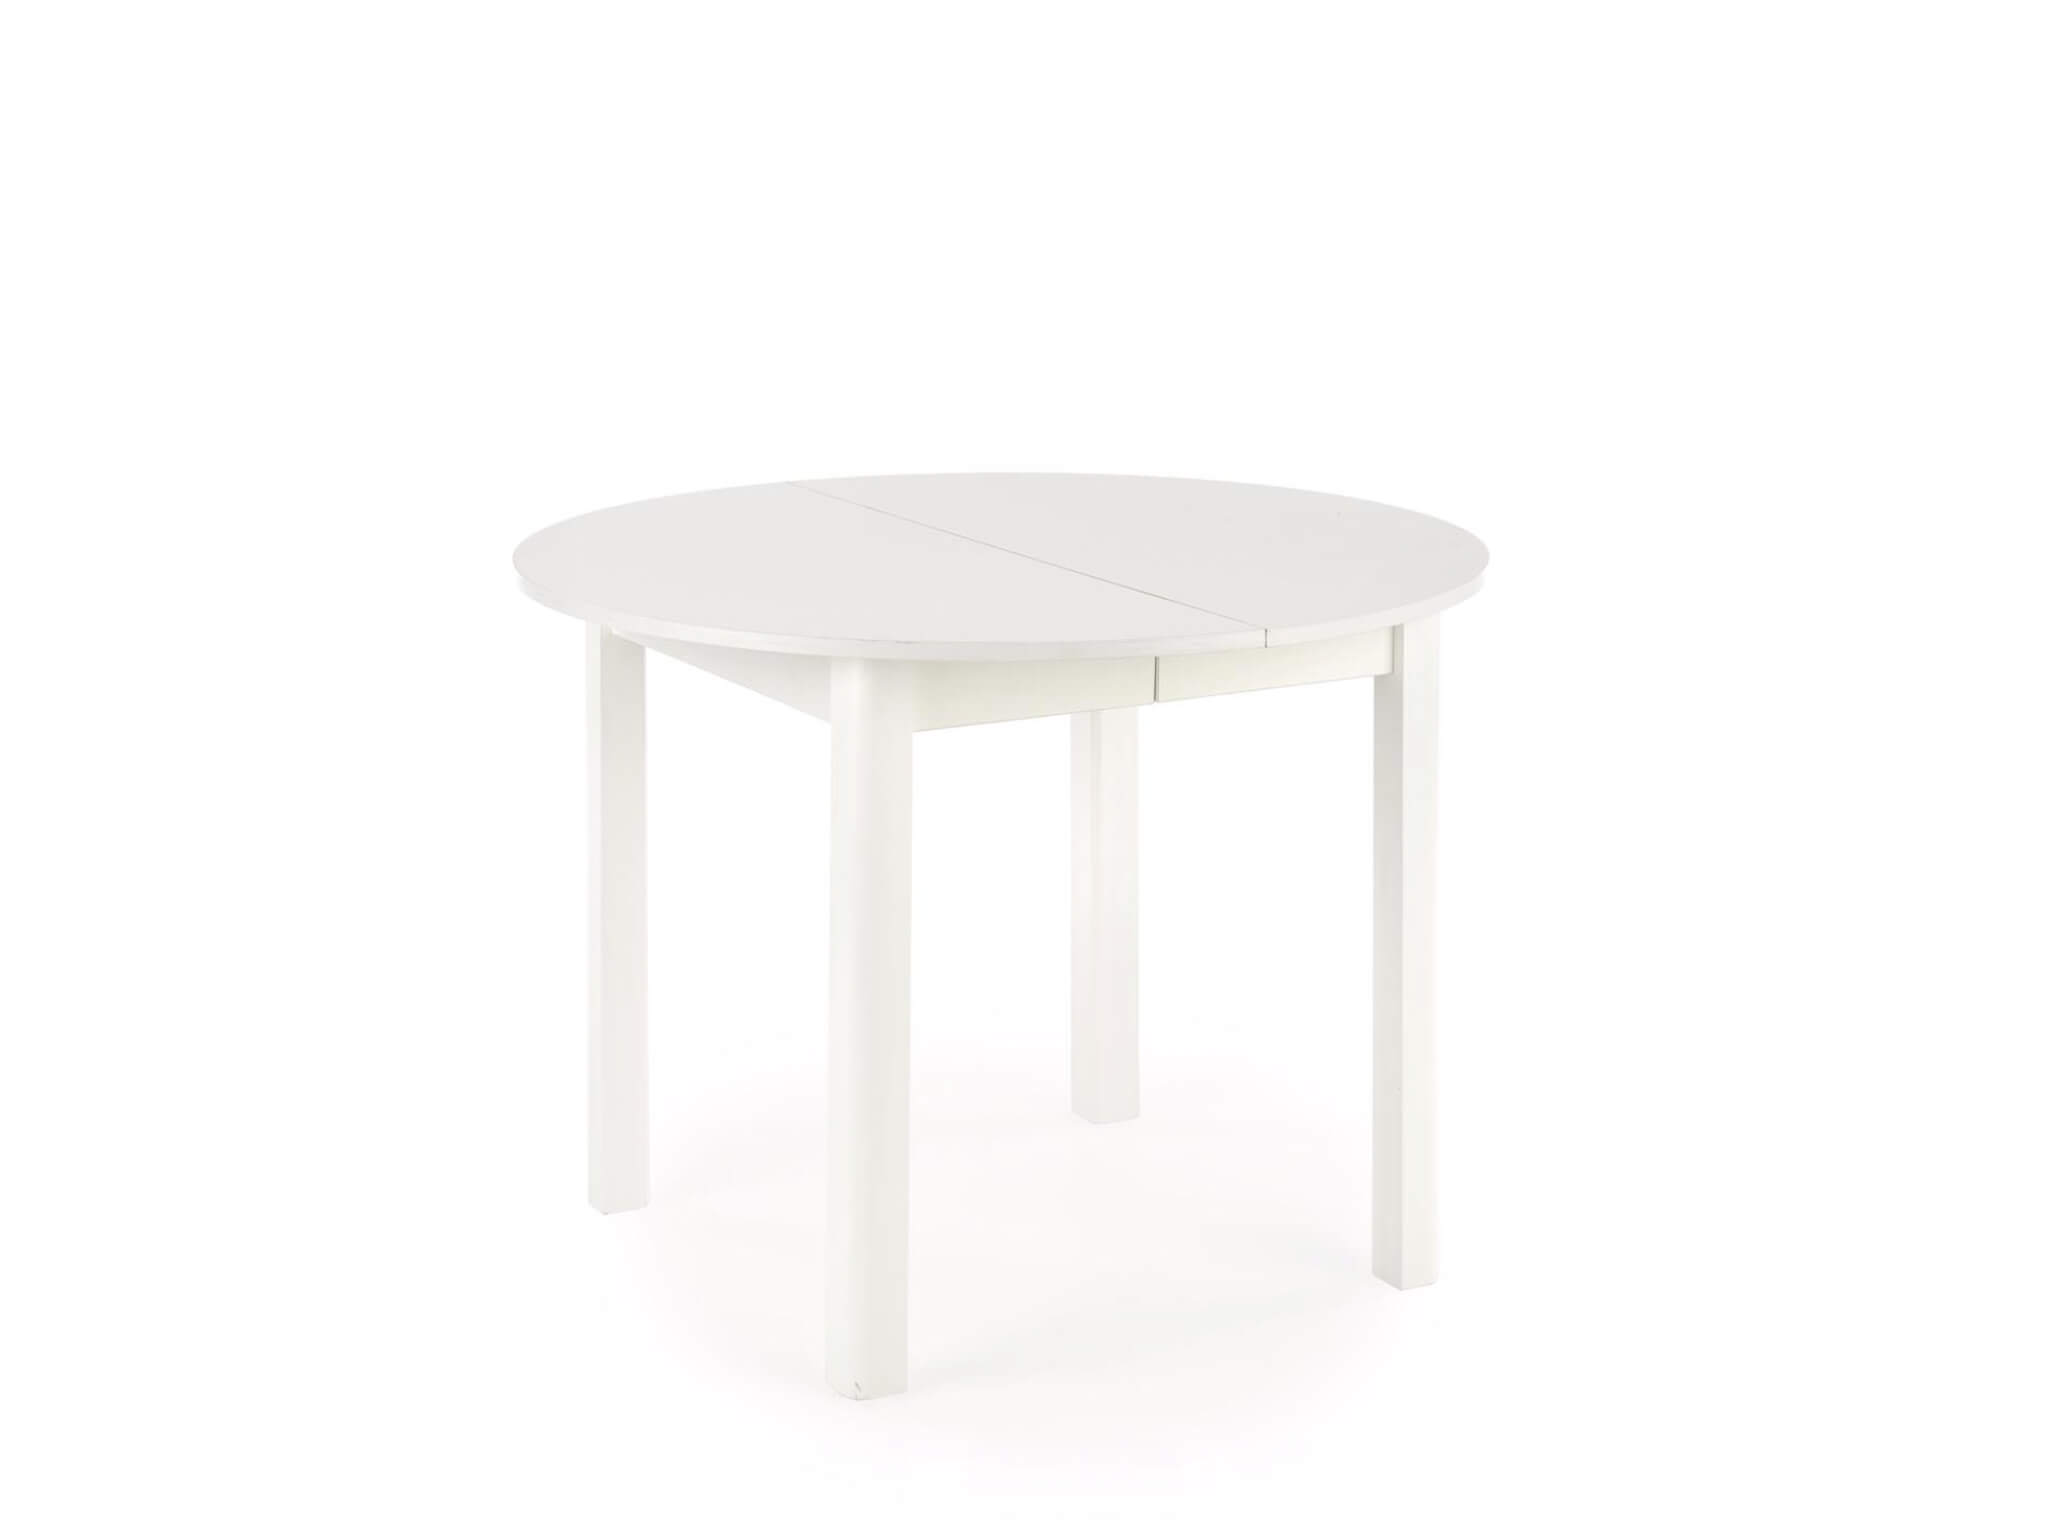 Okrúhly rozkladací jedálenský stôl Ringo 102-142x102 - biela